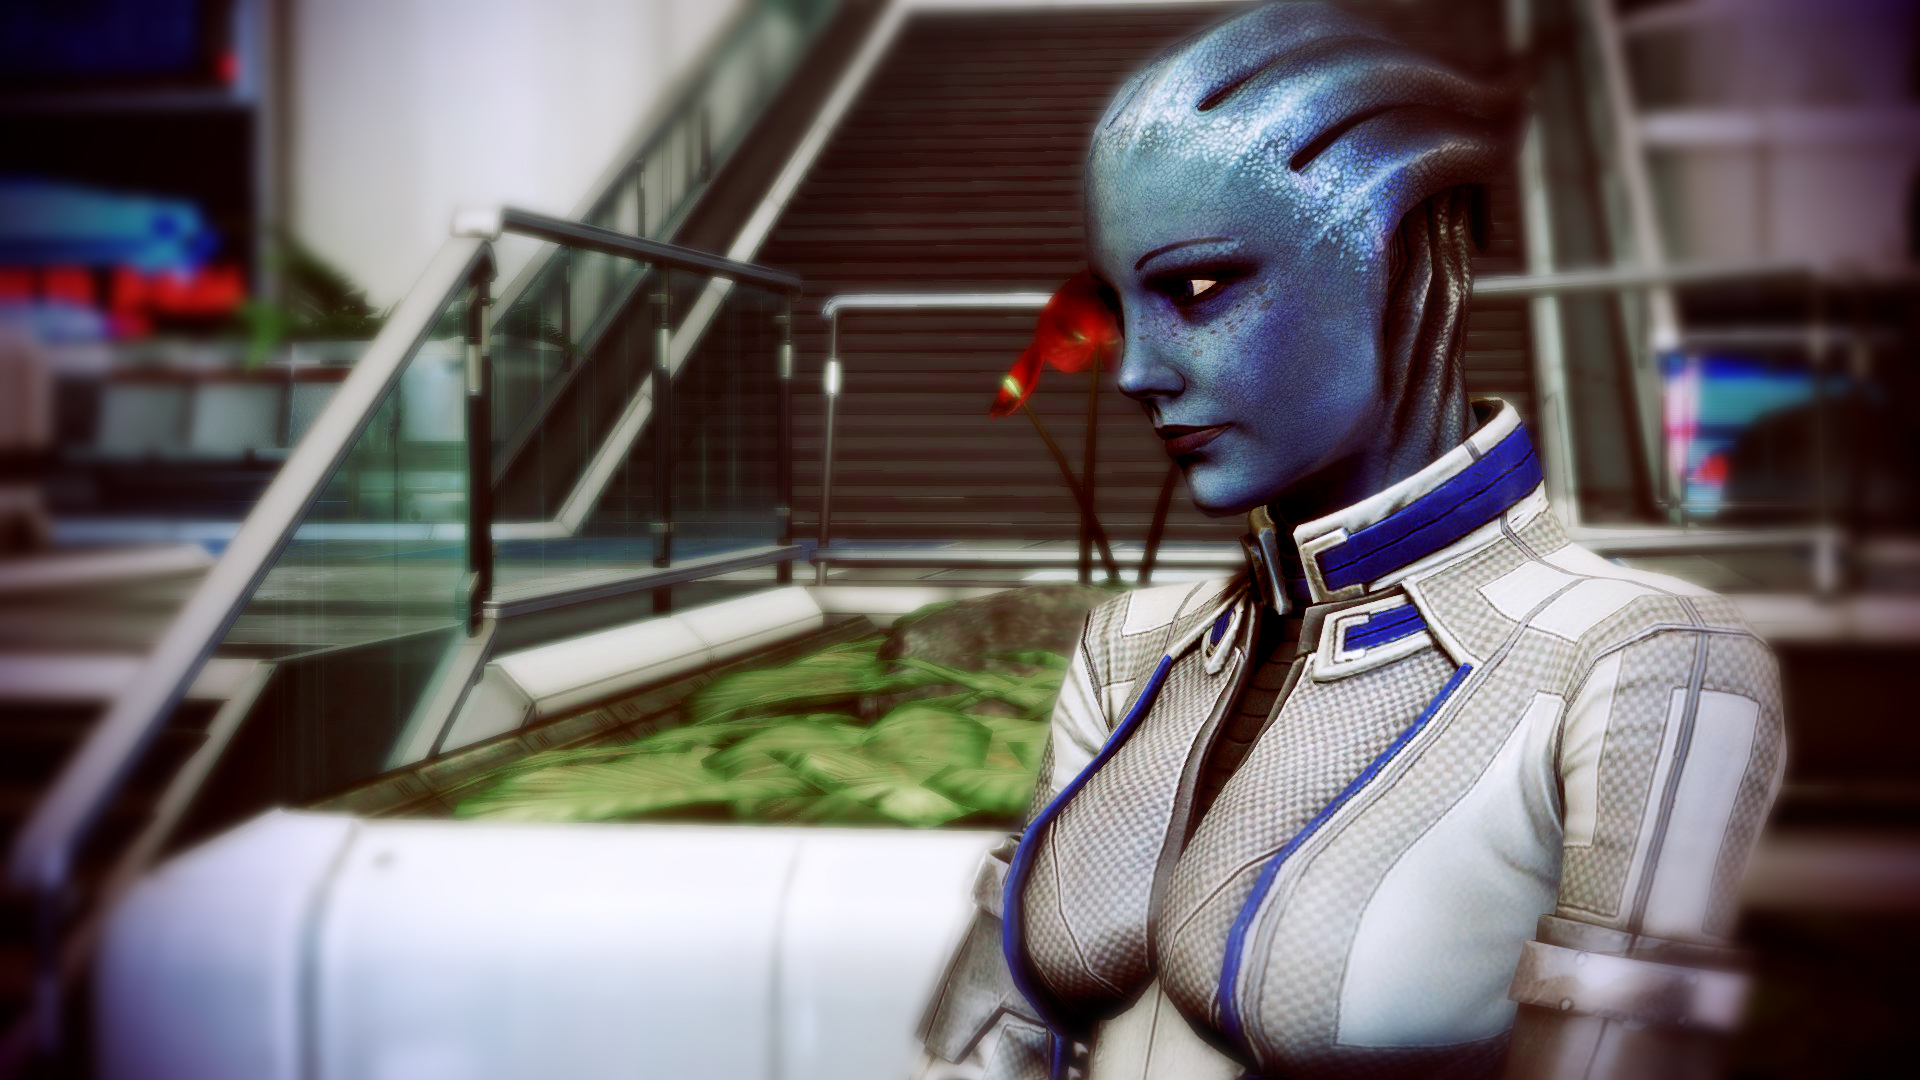 Descarga gratuita de fondo de pantalla para móvil de Mass Effect 3, Liara T'soni, Mass Effect, Videojuego.